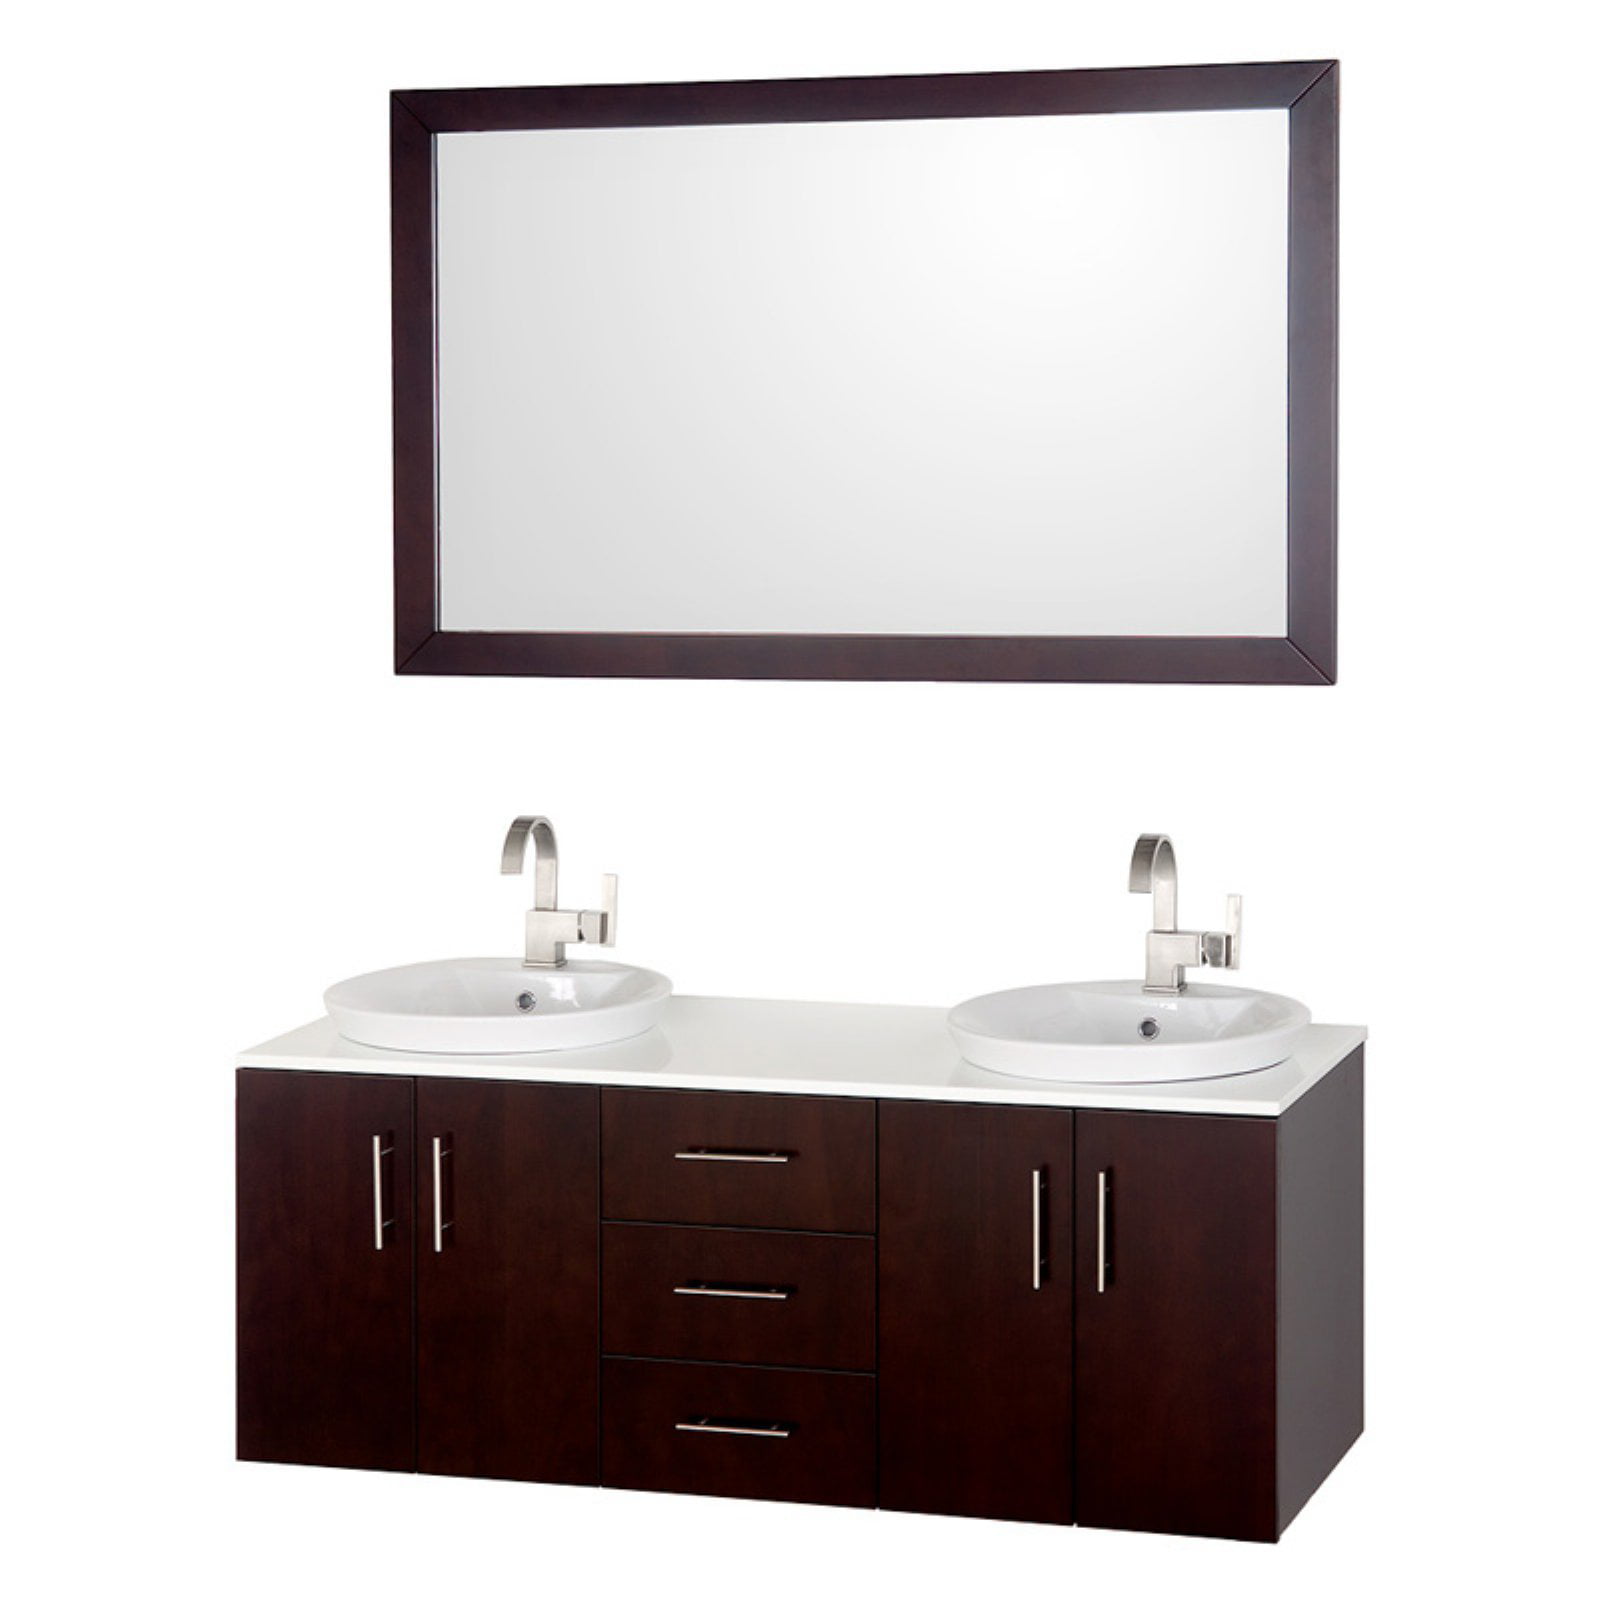 52 Inch Mirror, 52 Inch Bathroom Vanity Top